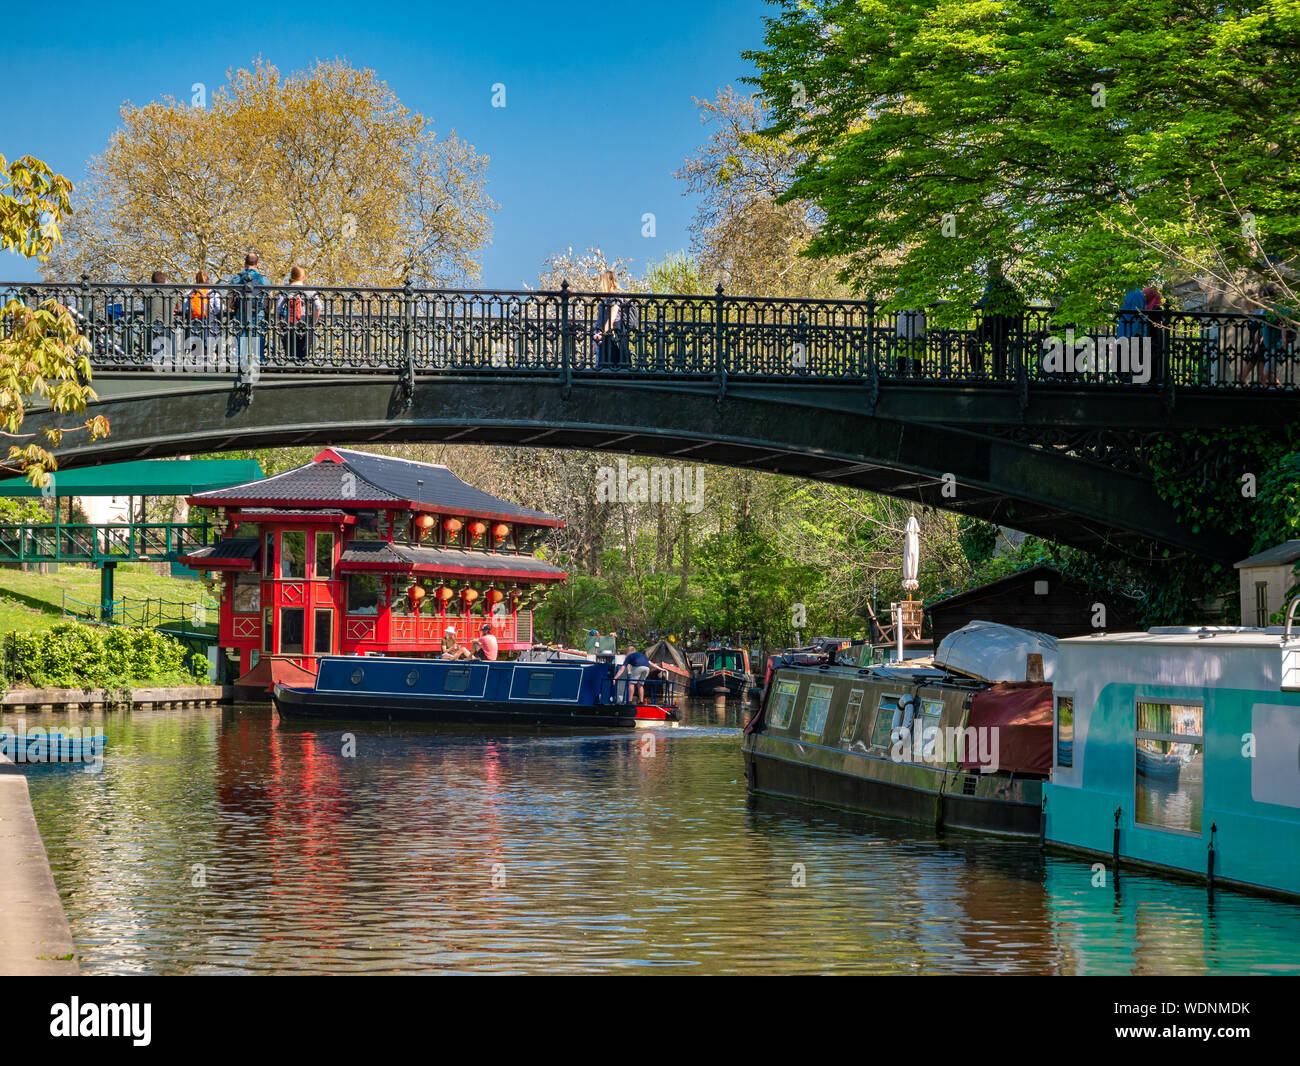 Bella regione di Camden town in Regents Park area con barche sul canale cinese e il piccolo tempio di fianco al ponte di Londra, Inghilterra Foto Stock